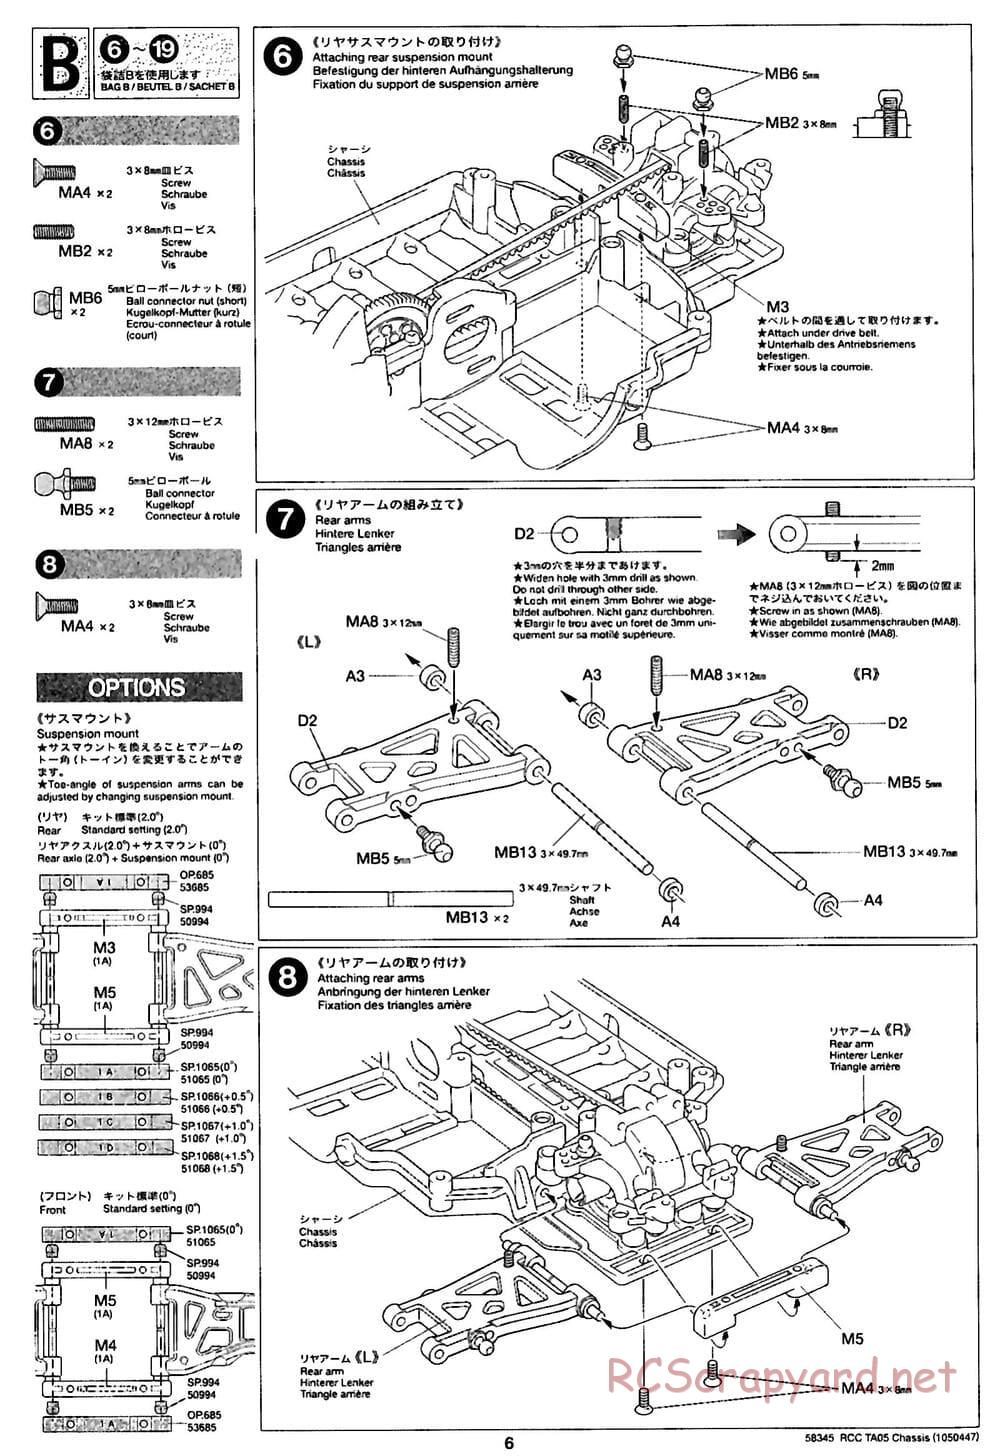 Tamiya - TA05 Chassis - Manual - Page 6